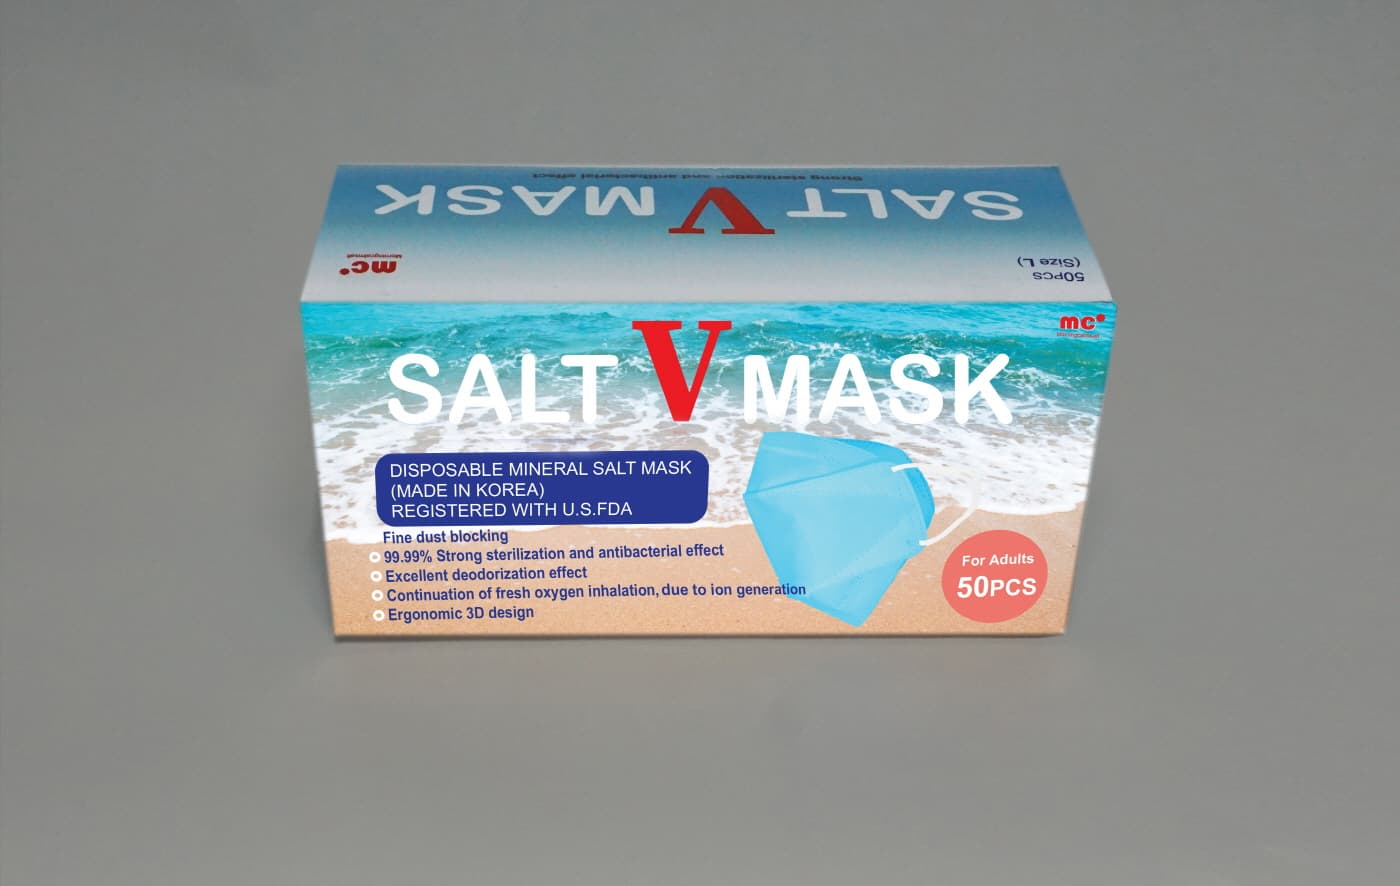 SALT V MASK _KF94_style 3D Type__ Health Care_ Medical